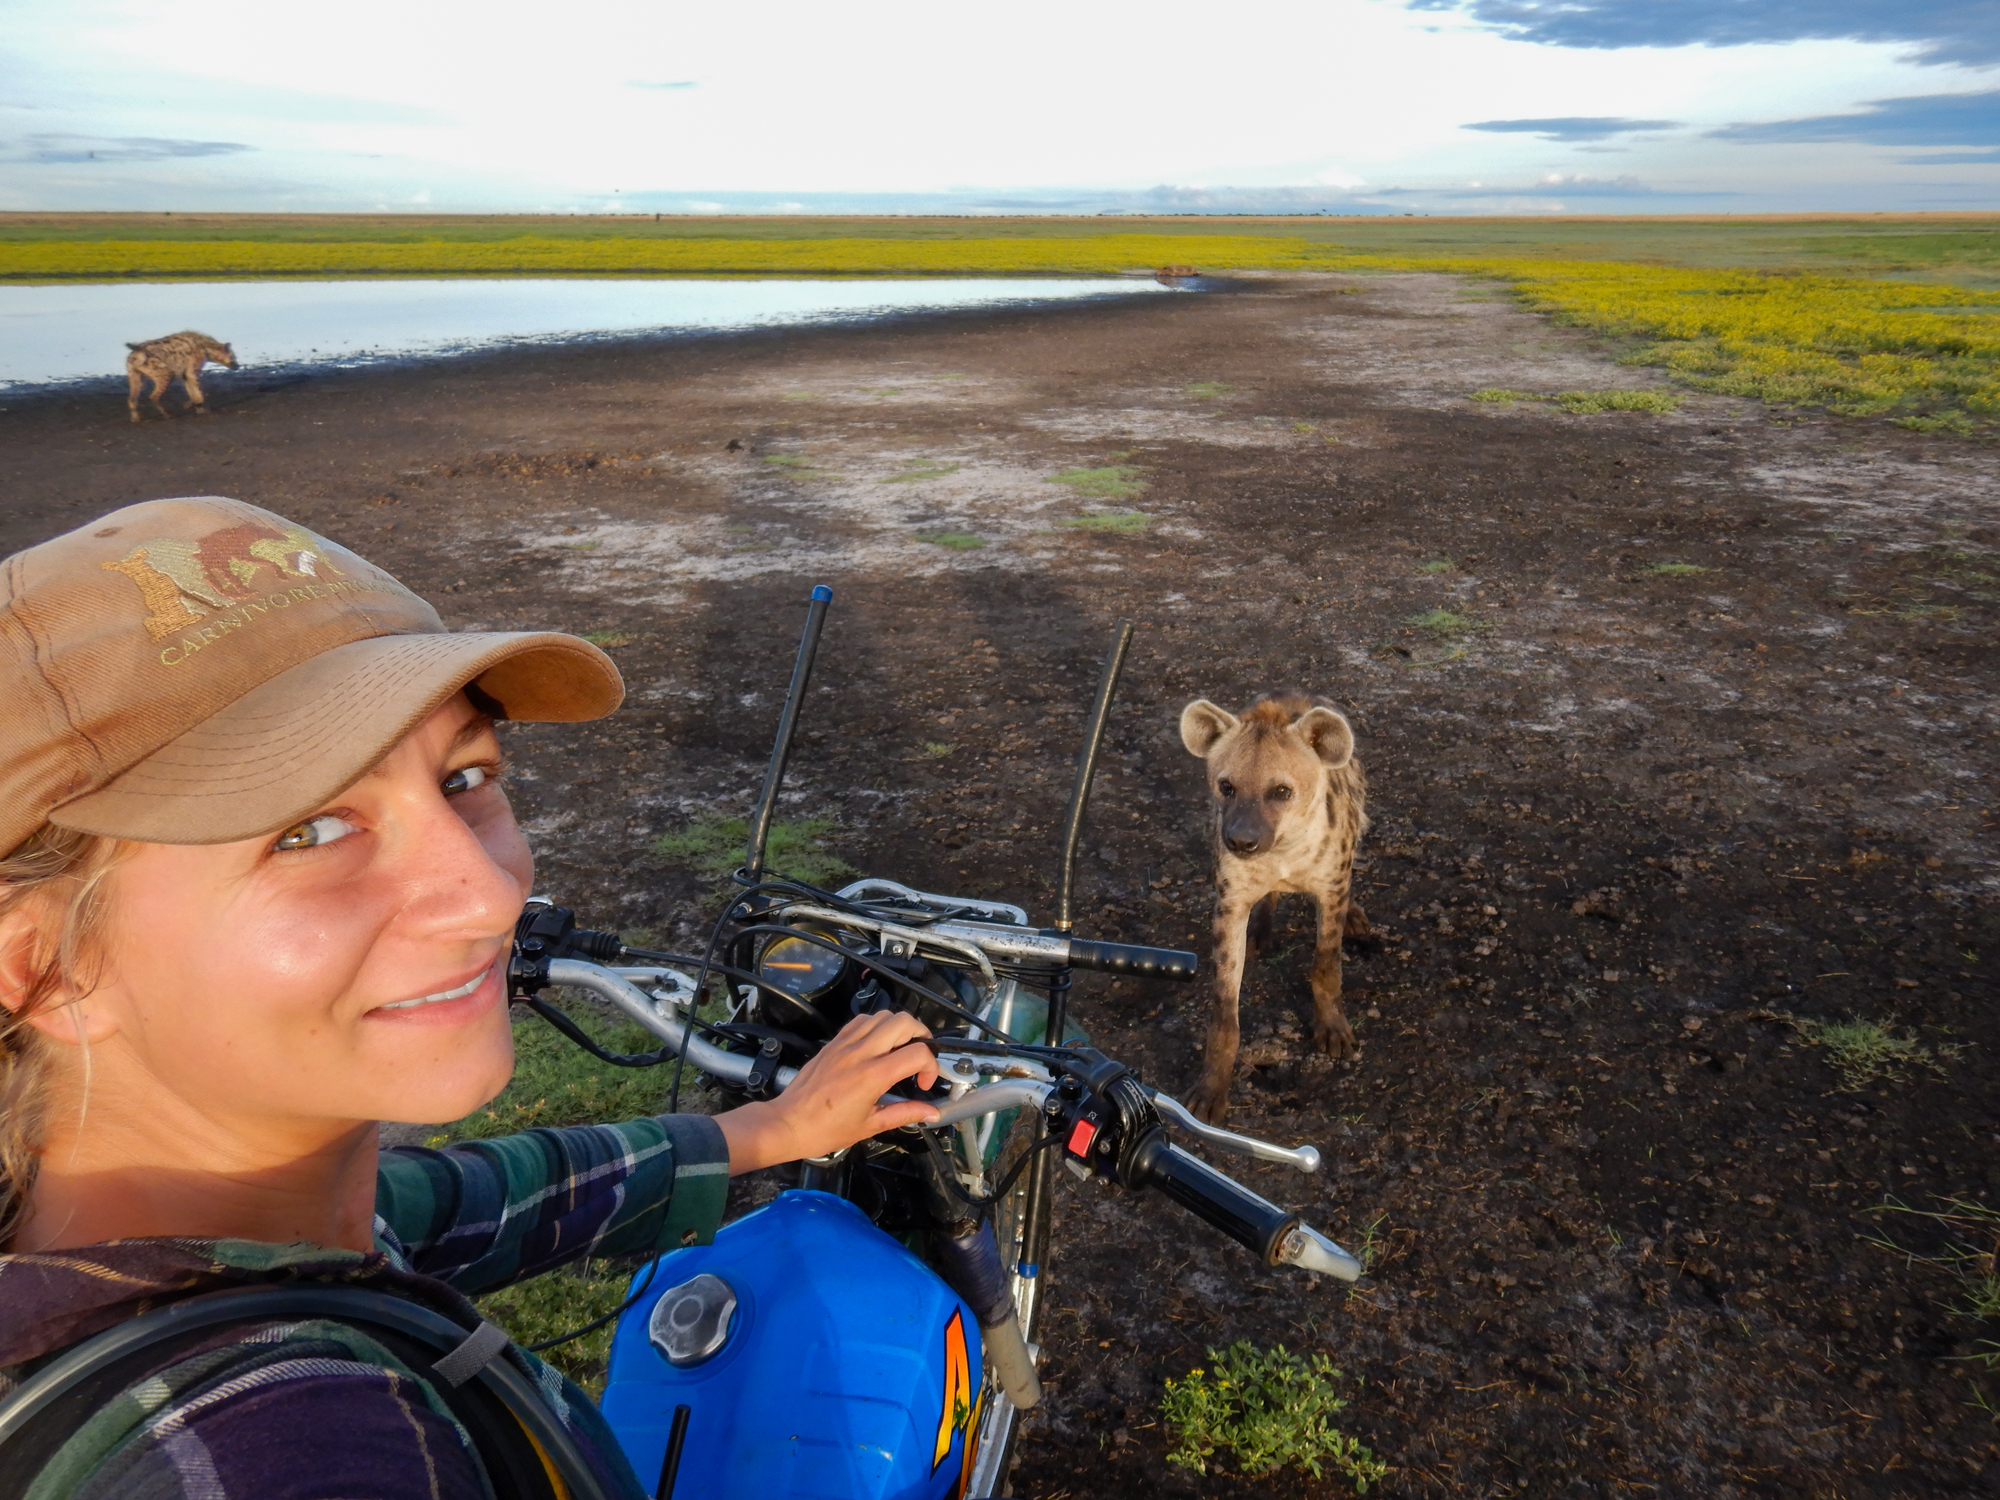 Selfie av Sandra på motorcykel med två hyenor i närheten.